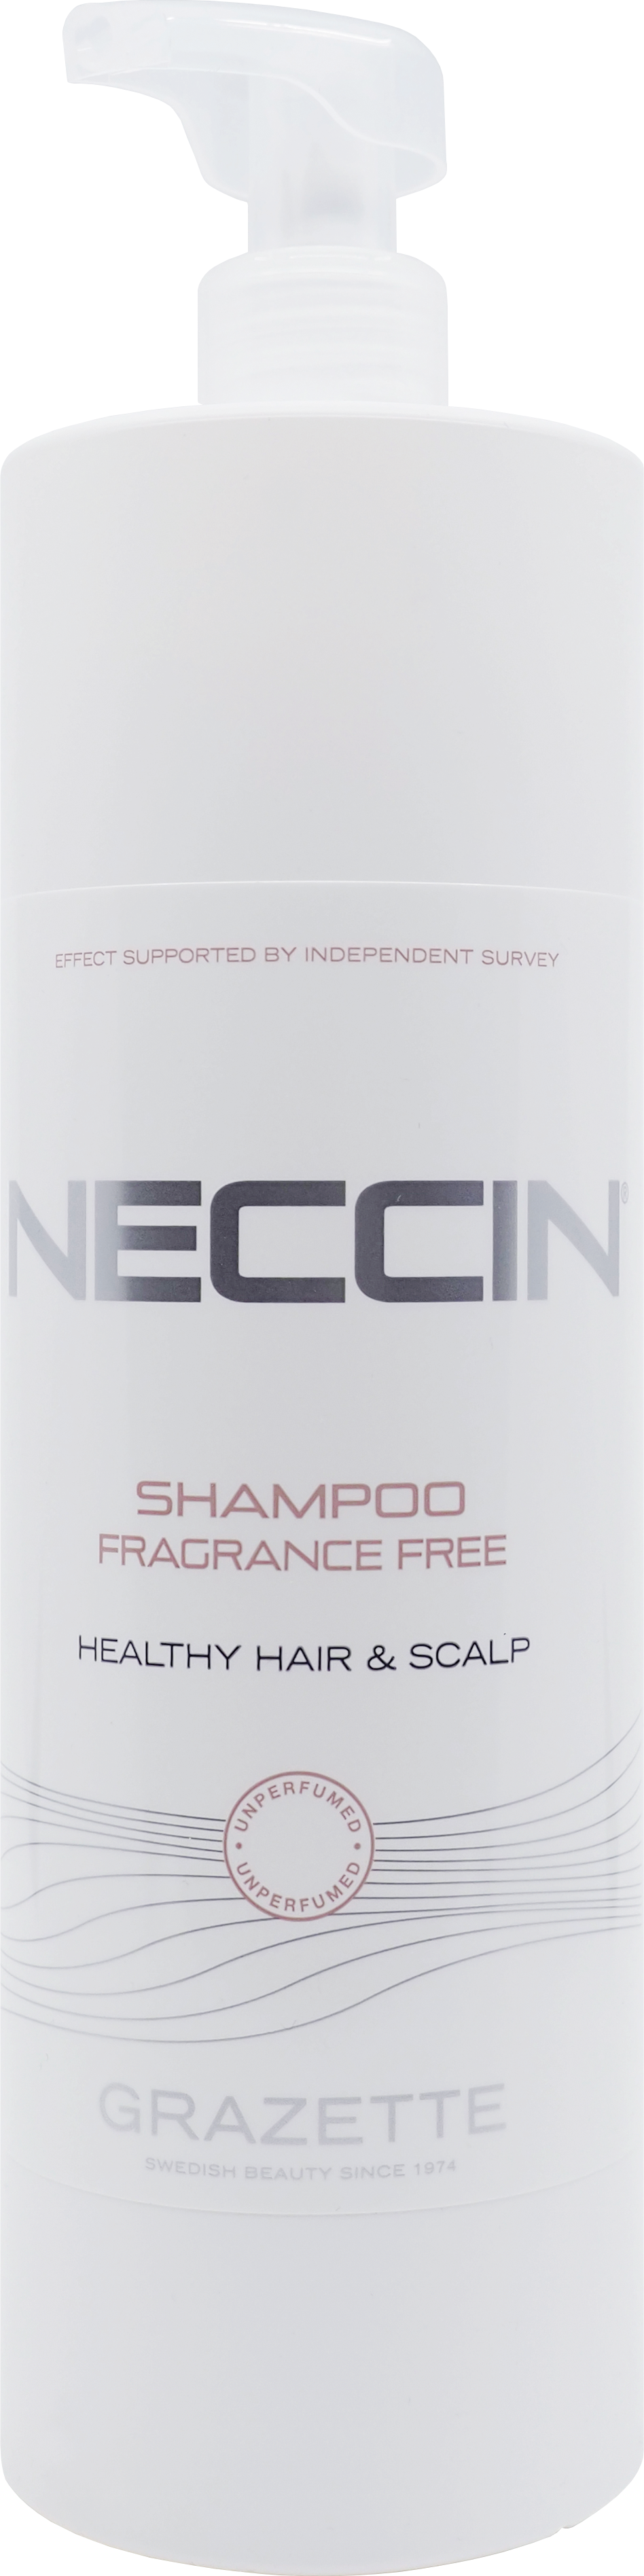 Bot Mentor gård Grazette Neccin Shampoo Fragrance Free 1000 ml | lyko.com